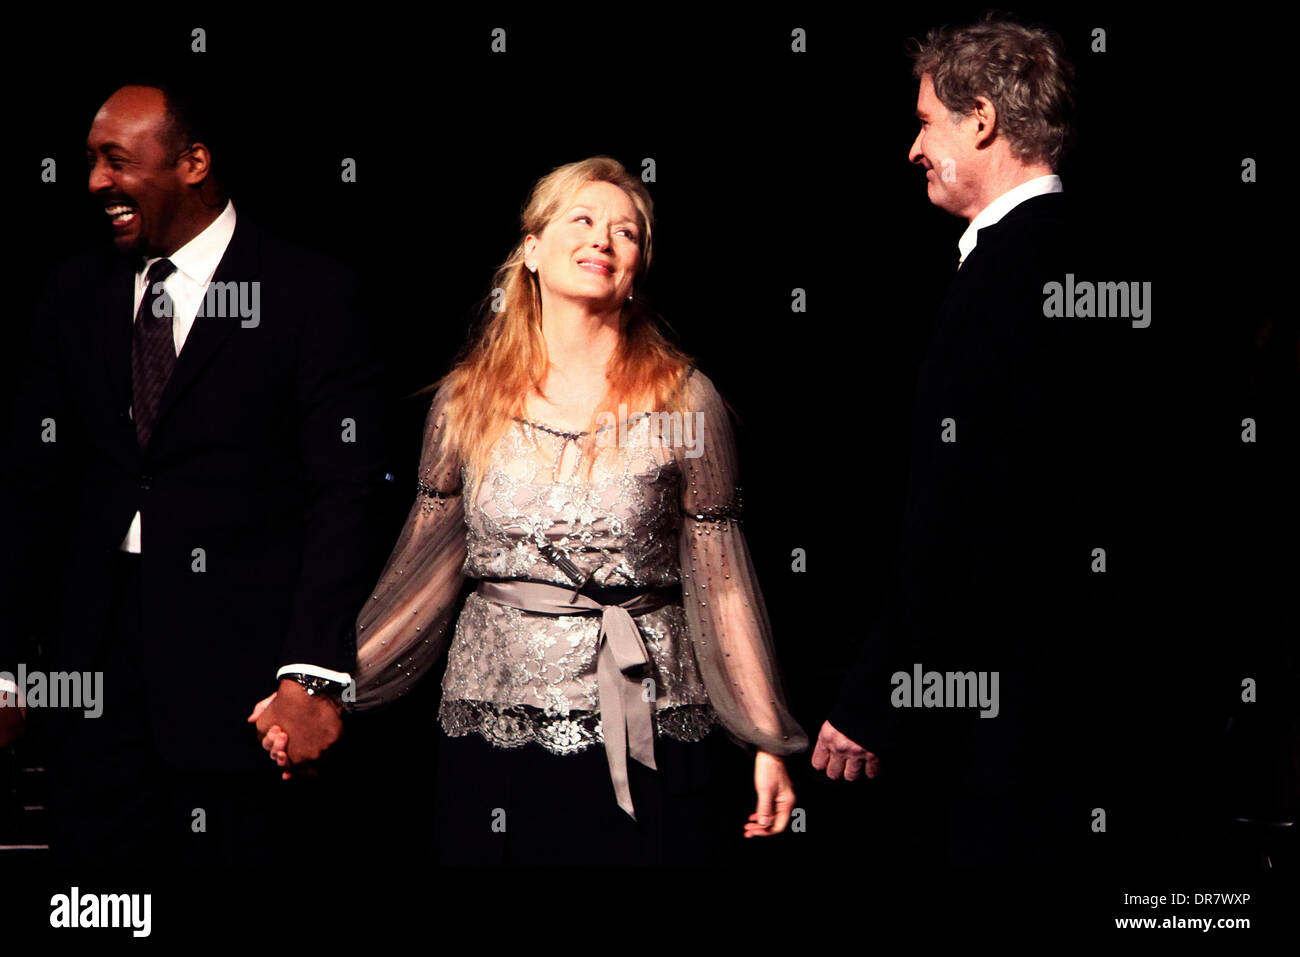 Jesse L. Martin, Meryl Streep, Kevin Kline et cast Curtain Call pour lecture de 'Roméo et Juliette' tenu à la Delacorte Theater dans Central Park à New York City, USA - 18.06.12 Banque D'Images